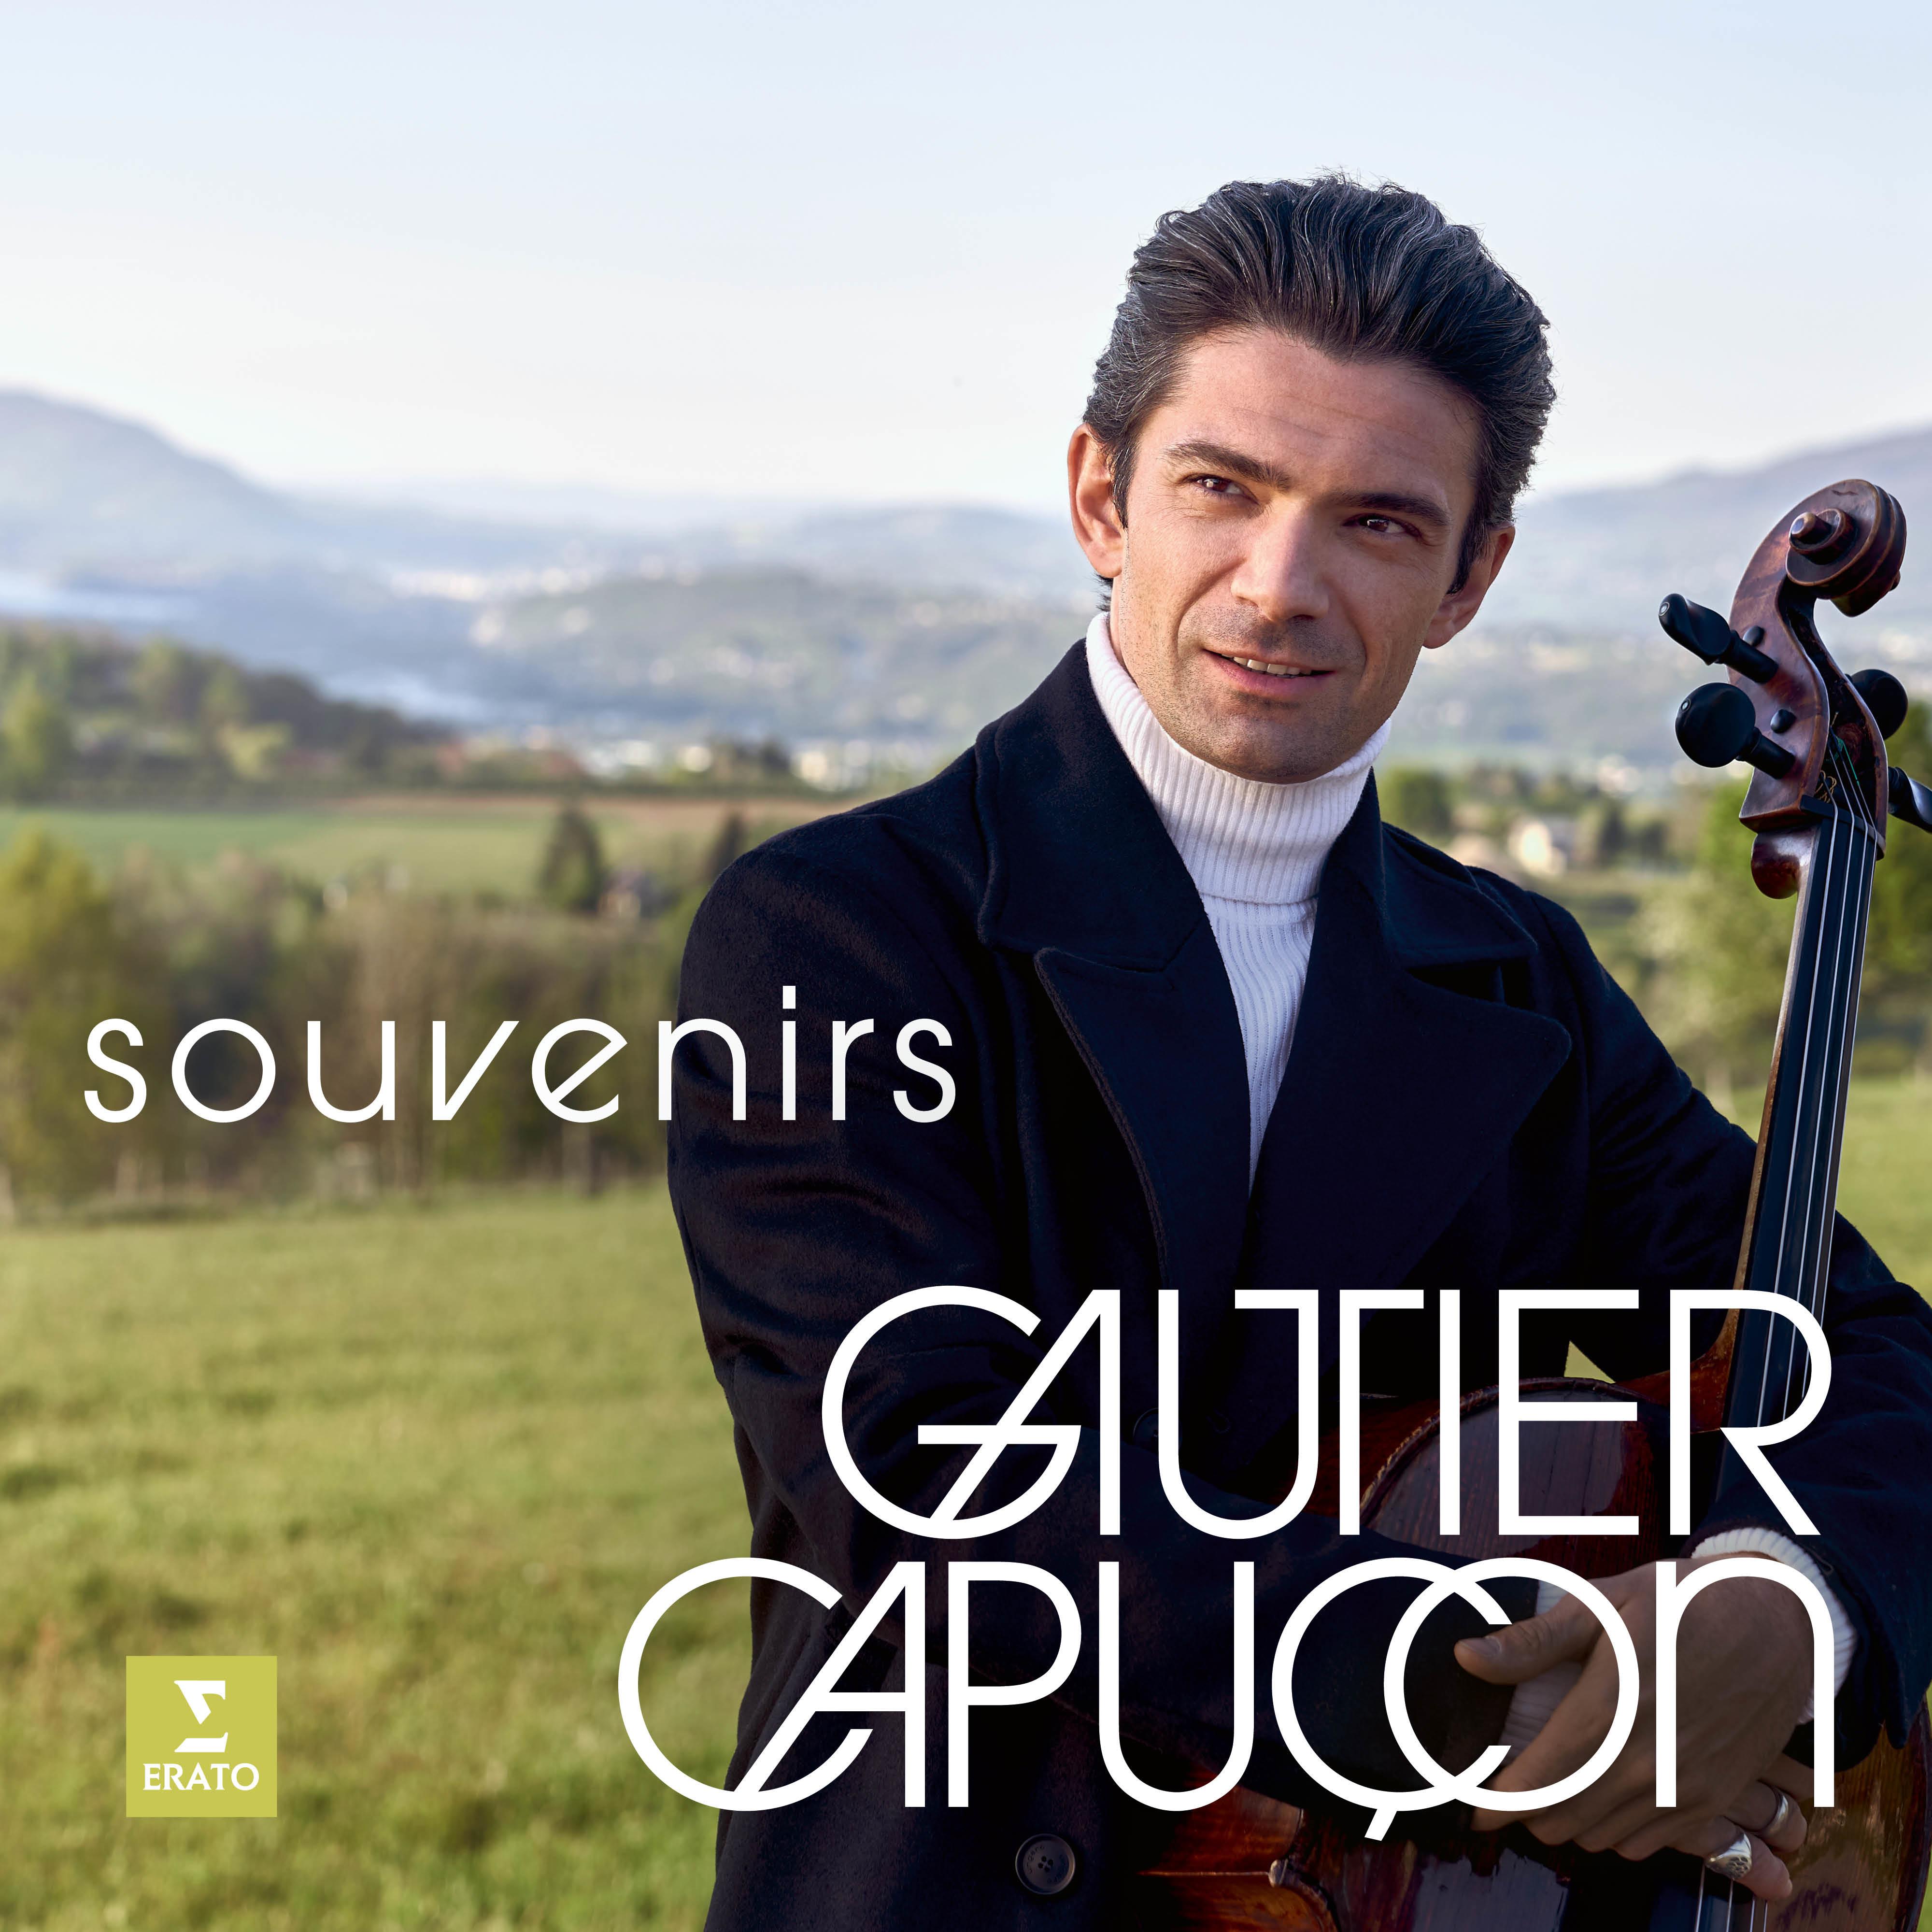 Gautier Capuçon - Piano Trio No. 5 in D Major, Op. 70 No. 1 